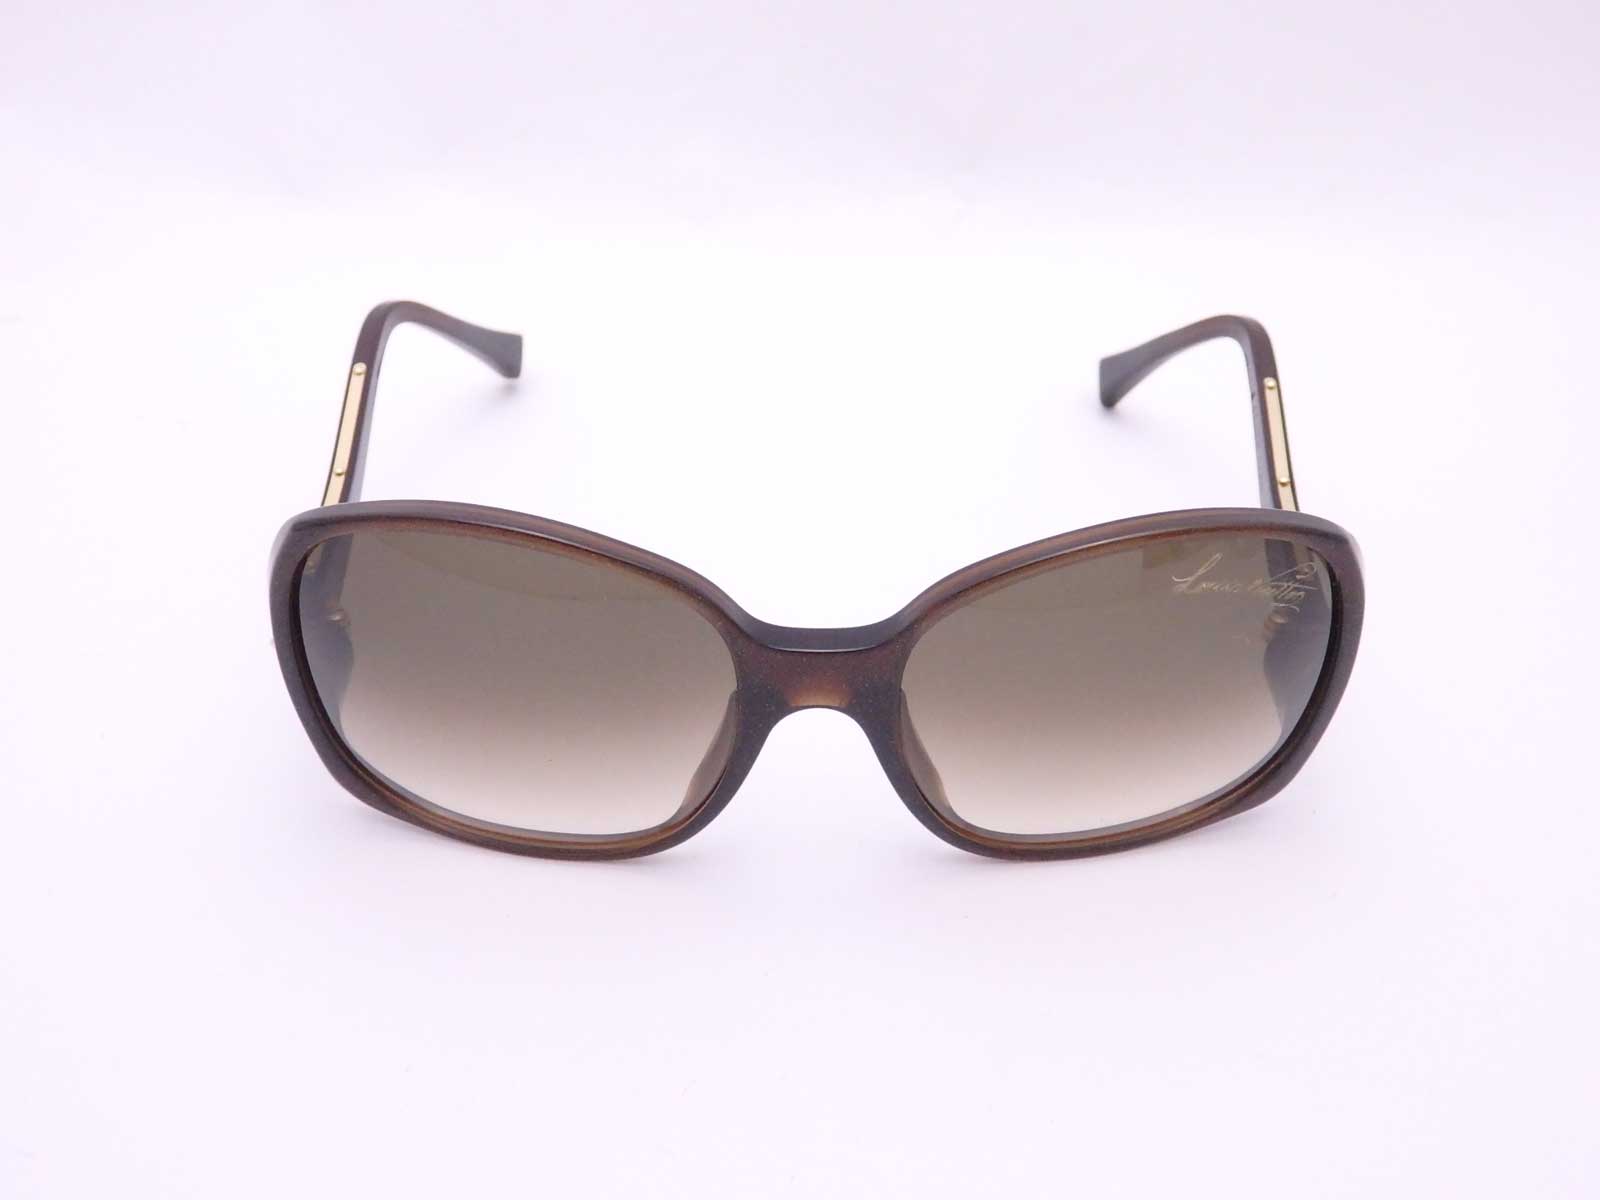 Auth Louis Vuitton Gina Sunglasses Brown Gradation Plastic/Glitter - e42466 | eBay